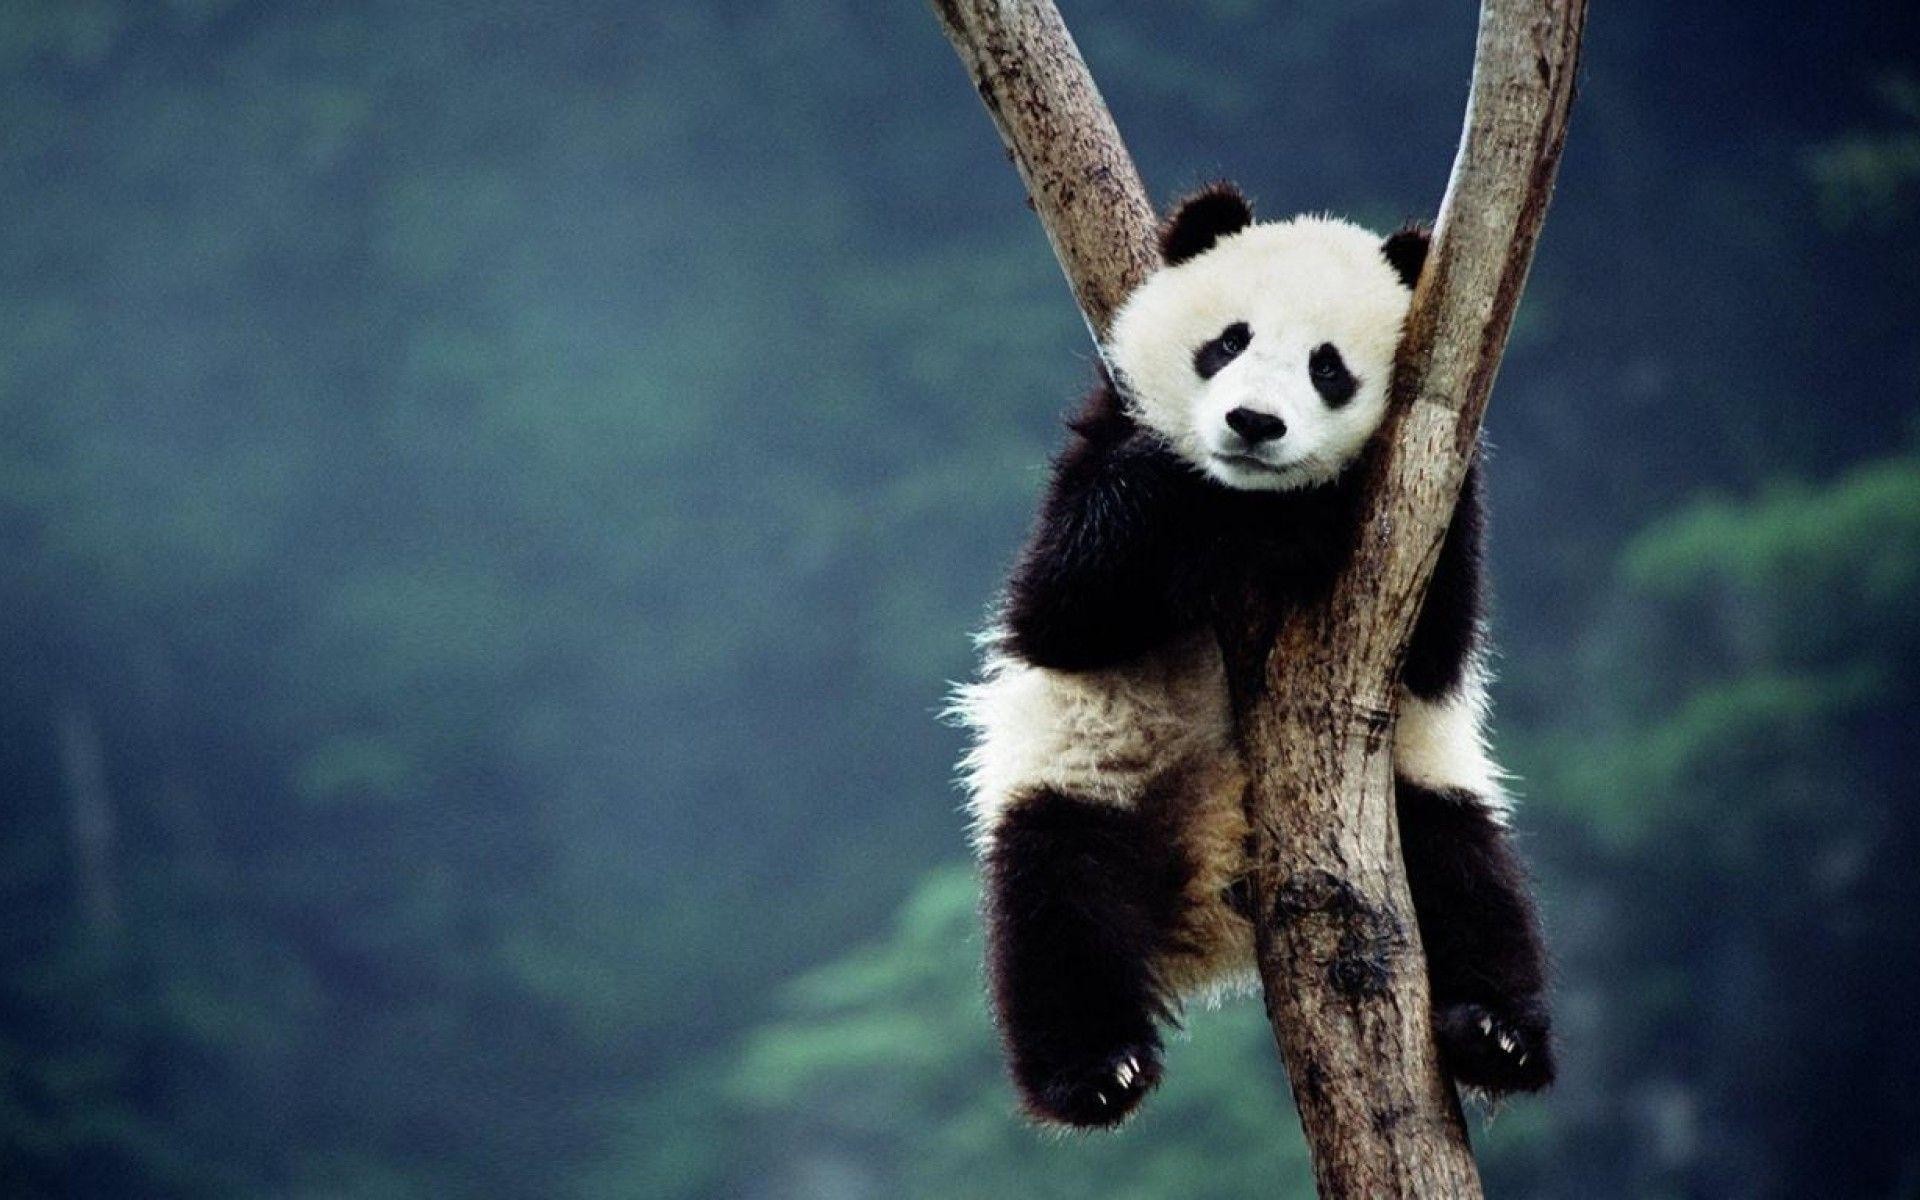 Nền gấu trúc panda đẹp đưa bạn đến một thế giới hoang dã và đầy mê hoặc. Gấu trúc panda là loài động vật kỳ diệu, với bộ lông đen trắng đầy hoa văn. Chắc chắn bạn sẽ bị cuốn hút bởi cảnh tượng đáng yêu và vẻ đẹp tự nhiên.